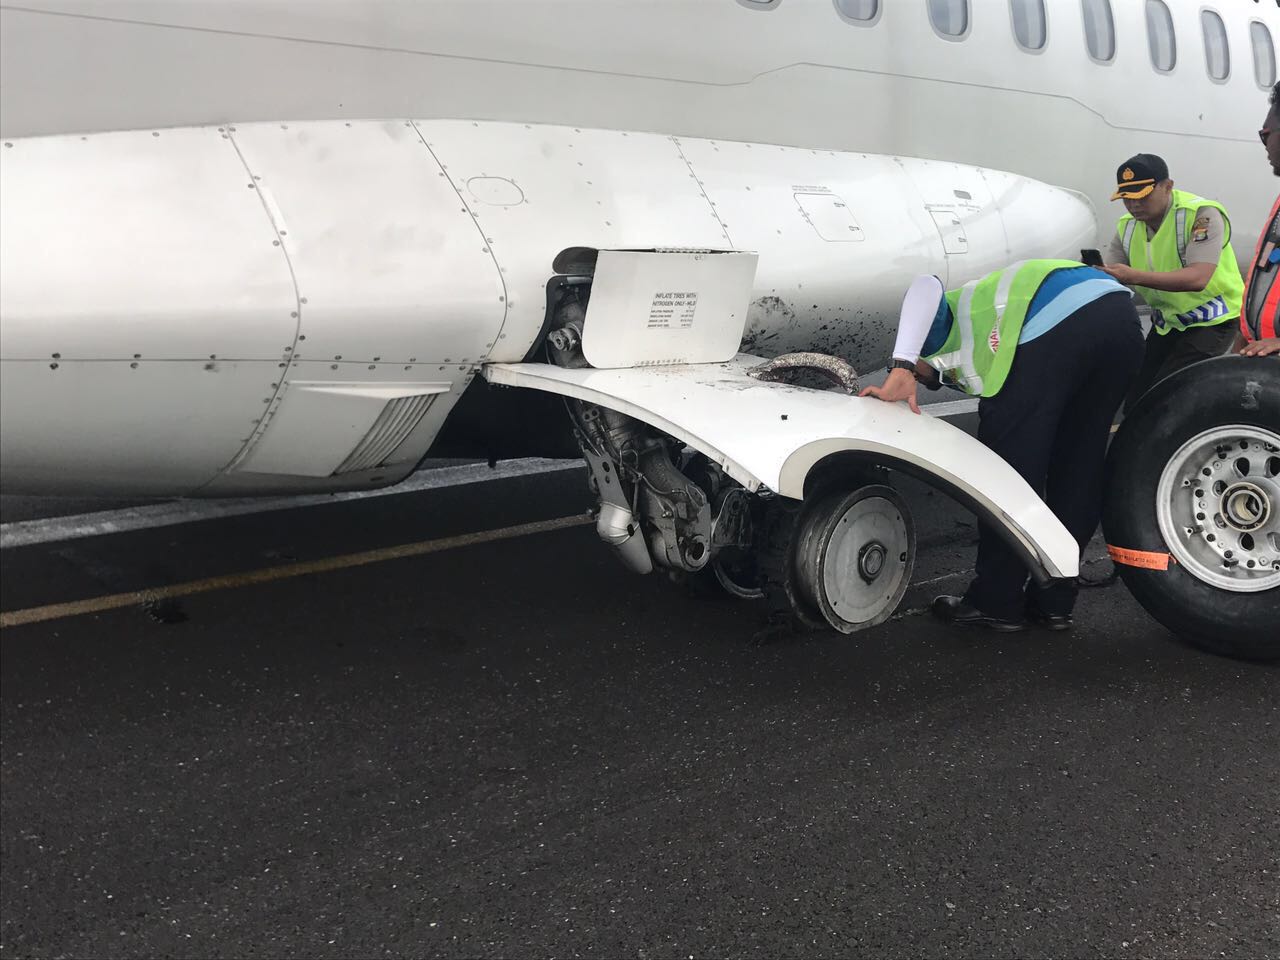 Pesawat Wings Air dengan nomor penerbangan IW 1286 mengalami insiden pecah ban pada dua roda sebelah kiri, setelah melakukan landing di landasan pacu Bandara Raden Inten II, Minggu (26/2).  (Lampungnews/El Shinta